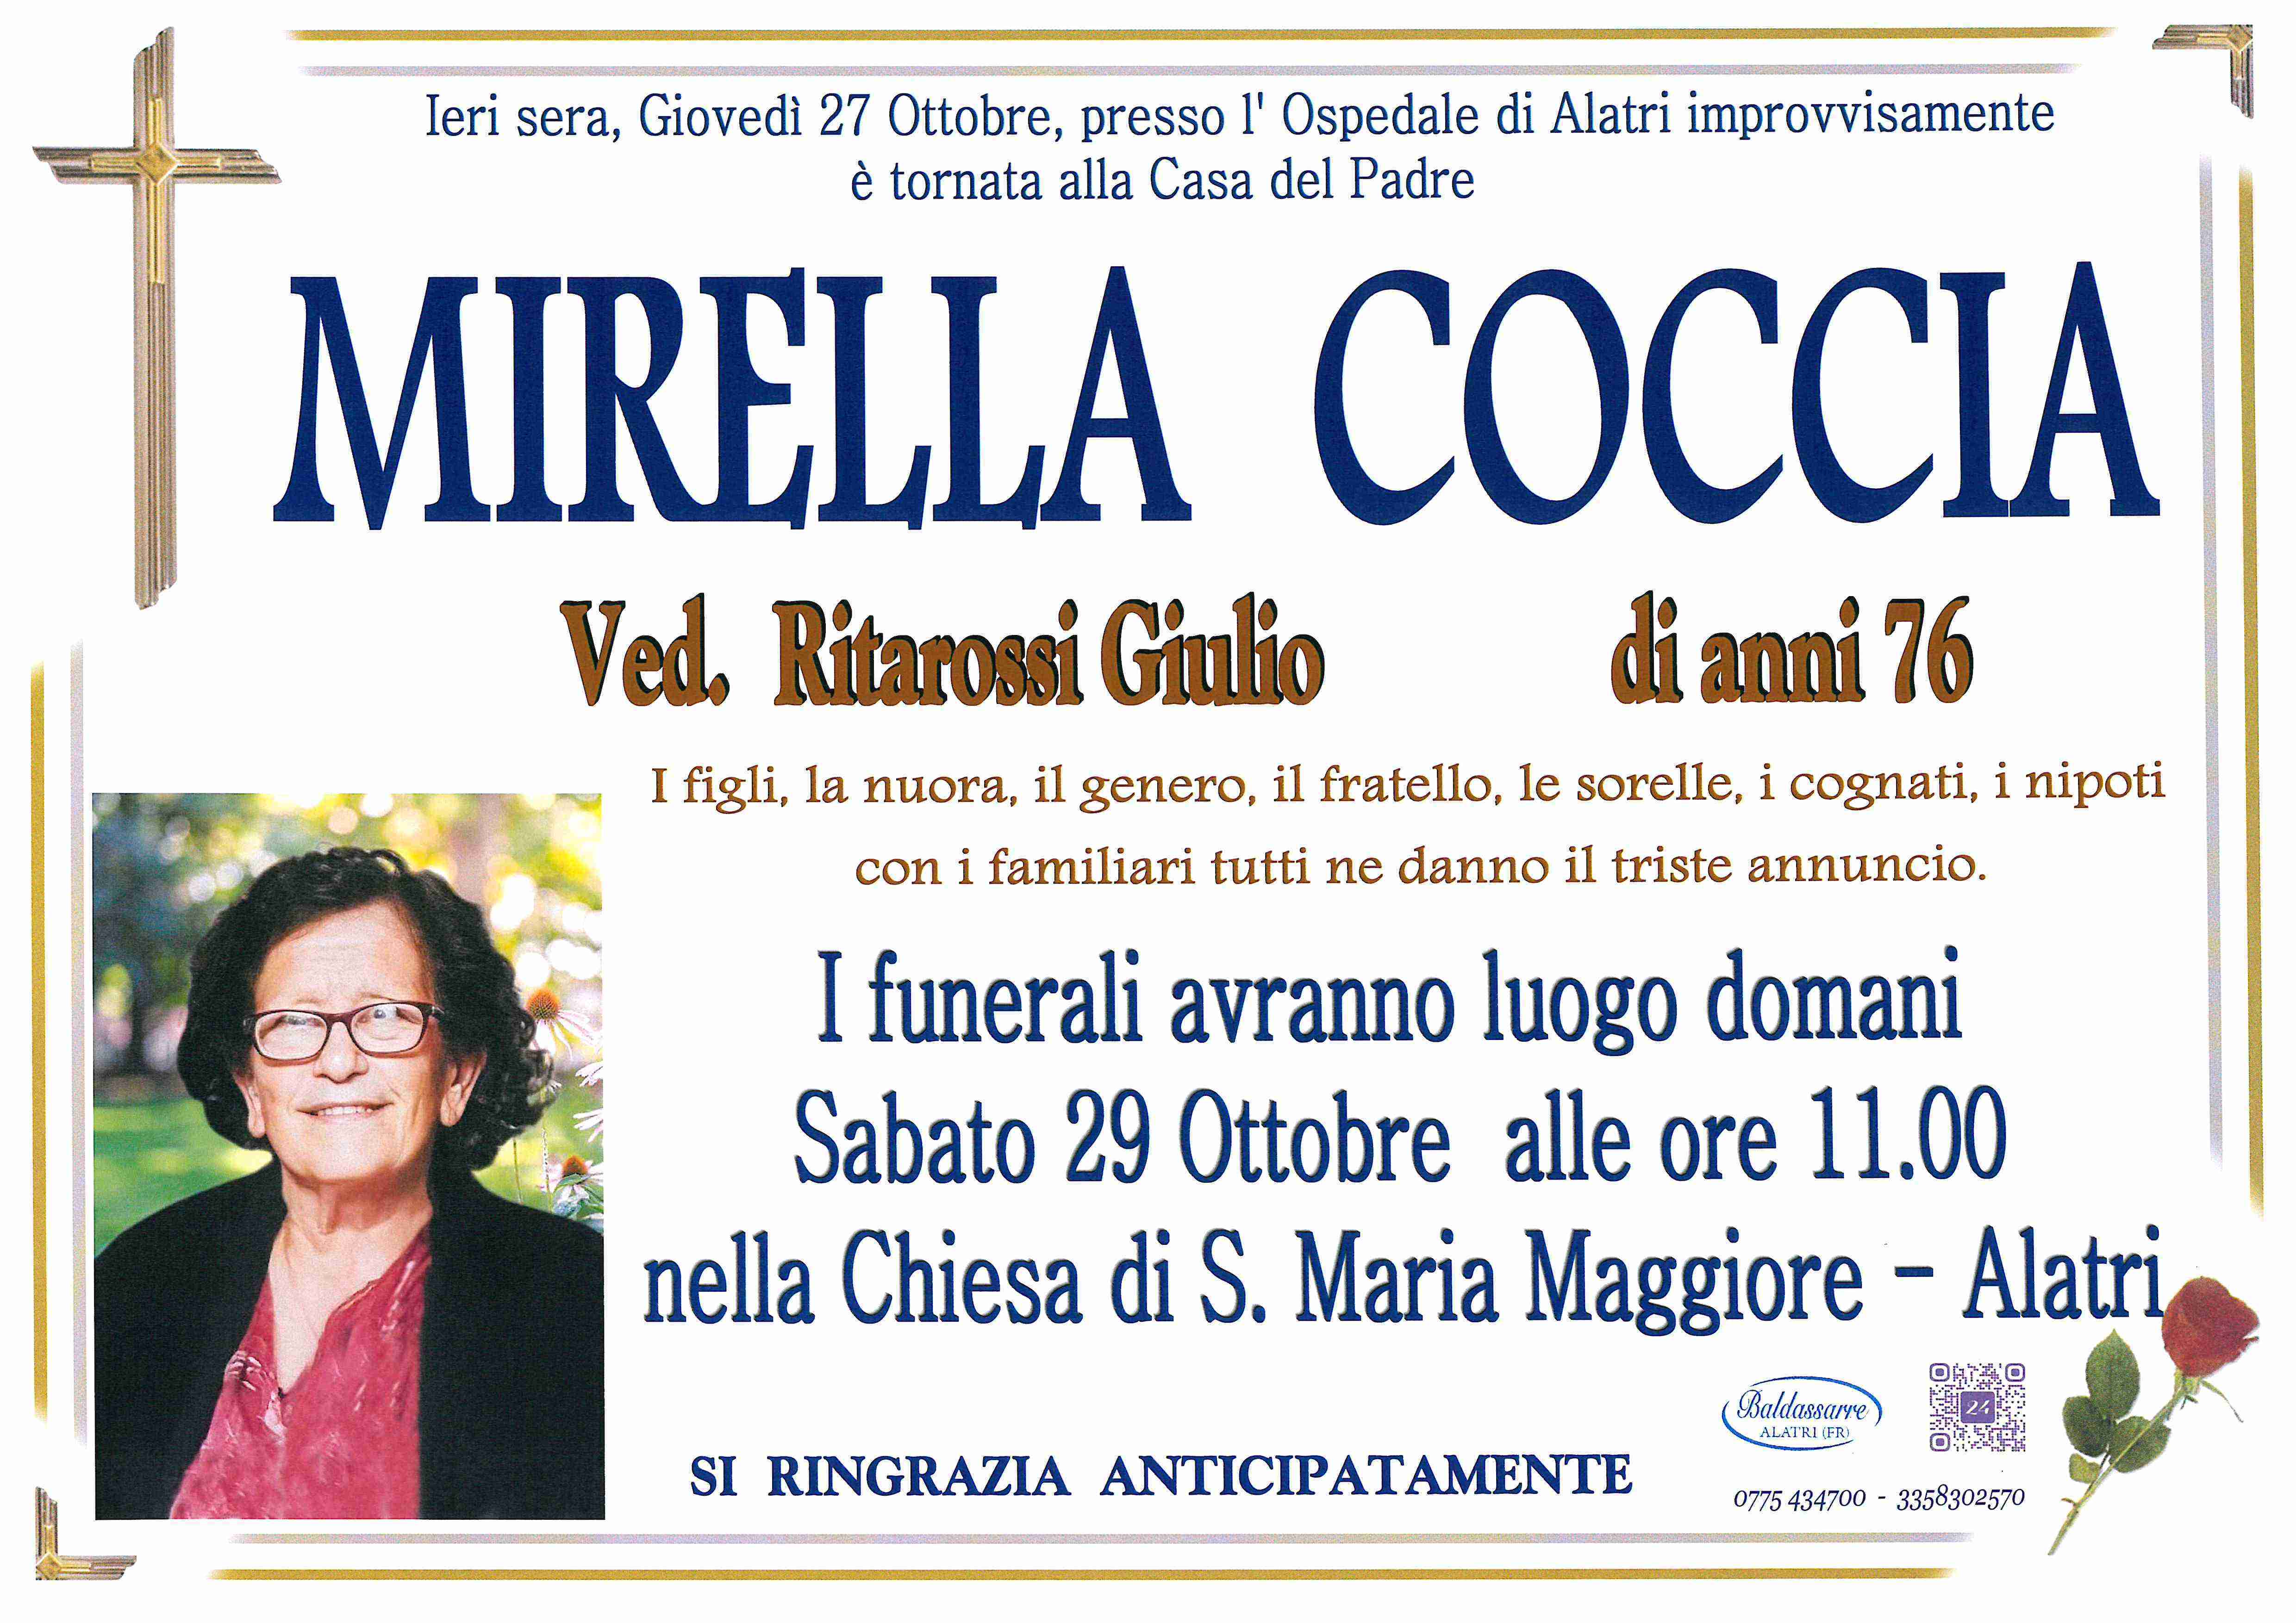 Mirella Coccia